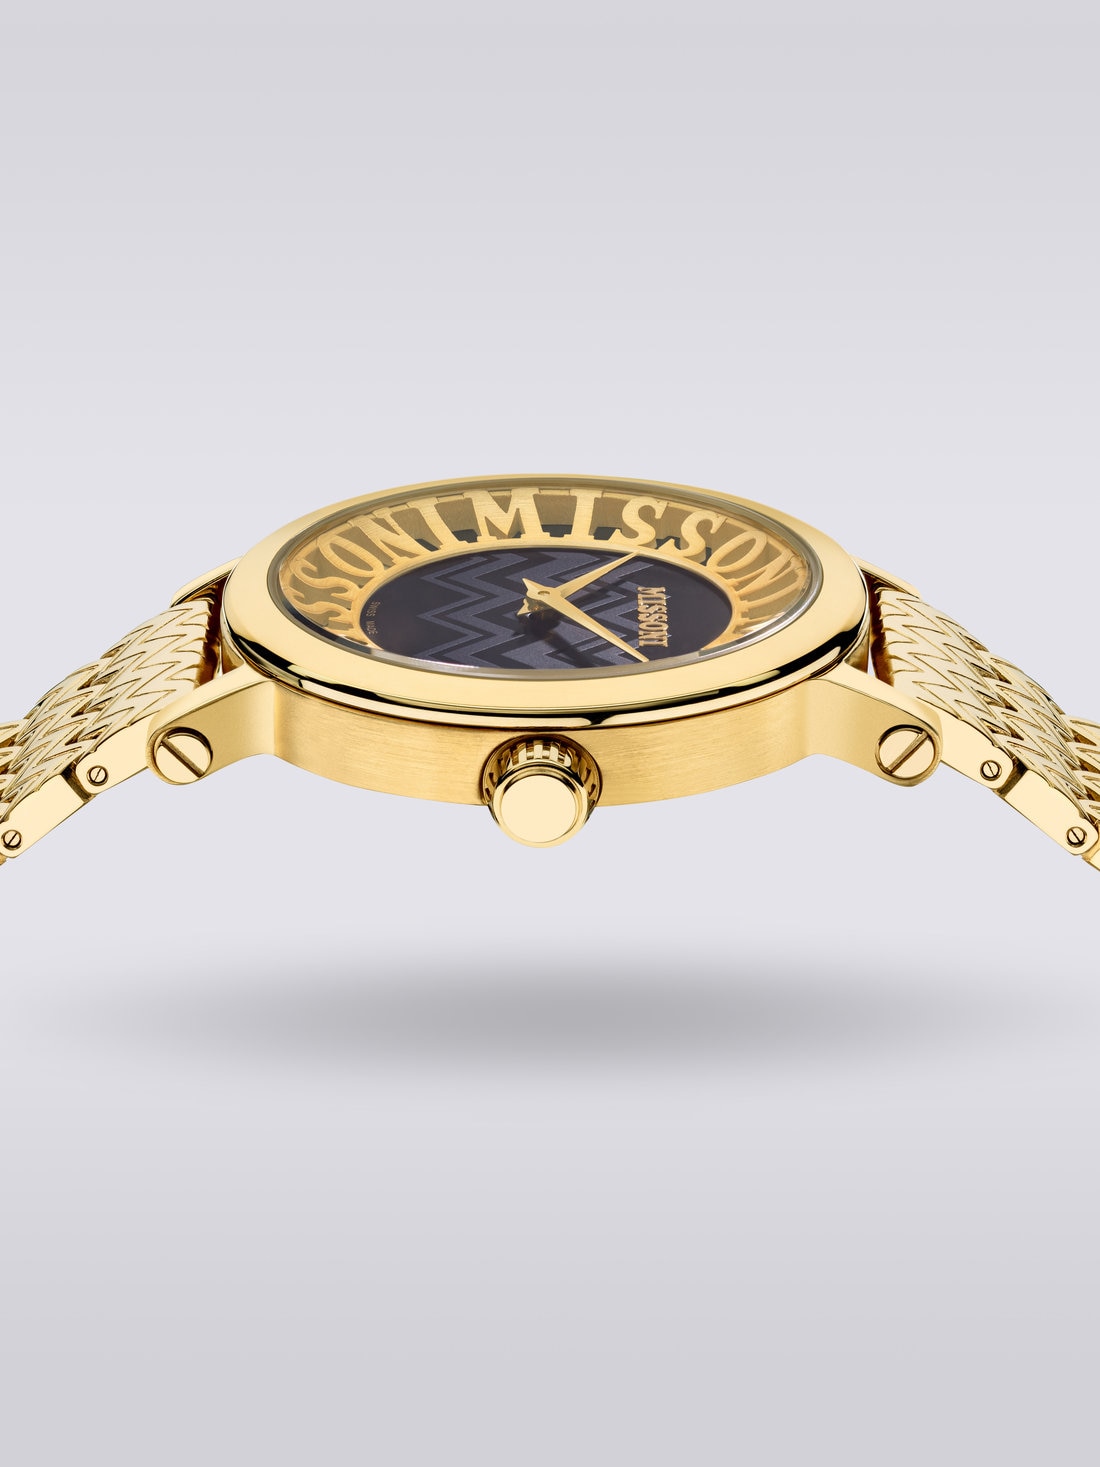 Reloj Missoni Melrose 36mm , Dorado - 8051575781698 - 3